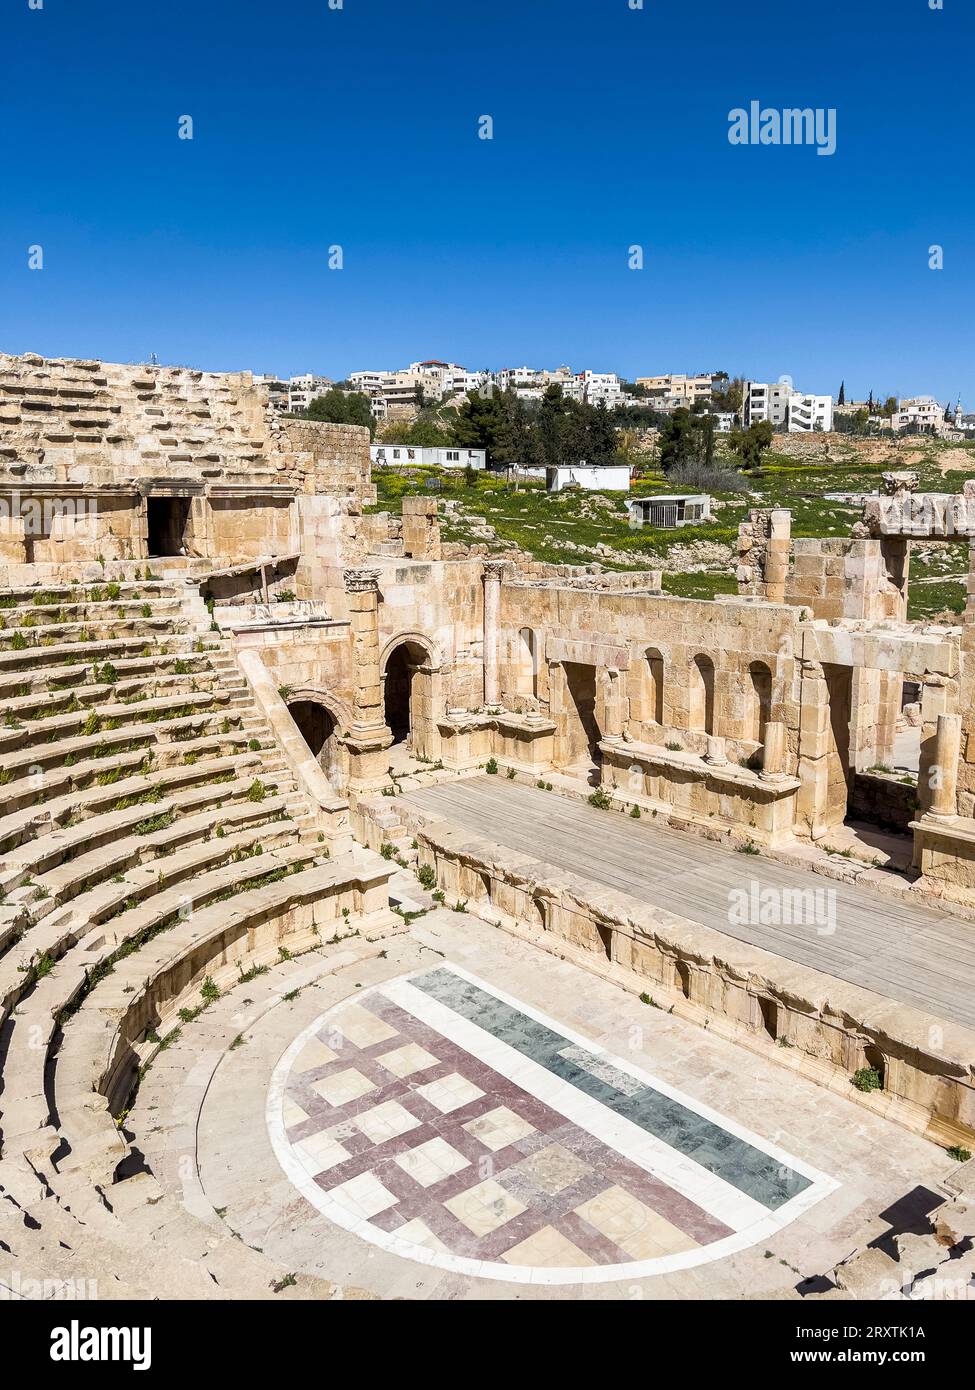 Il grande Teatro Nord nell'antica città di Jerash, che si ritiene sia stato fondato nel 331 a.C. da Alessandro Magno, Jerash, Giordania, Medio Oriente Foto Stock